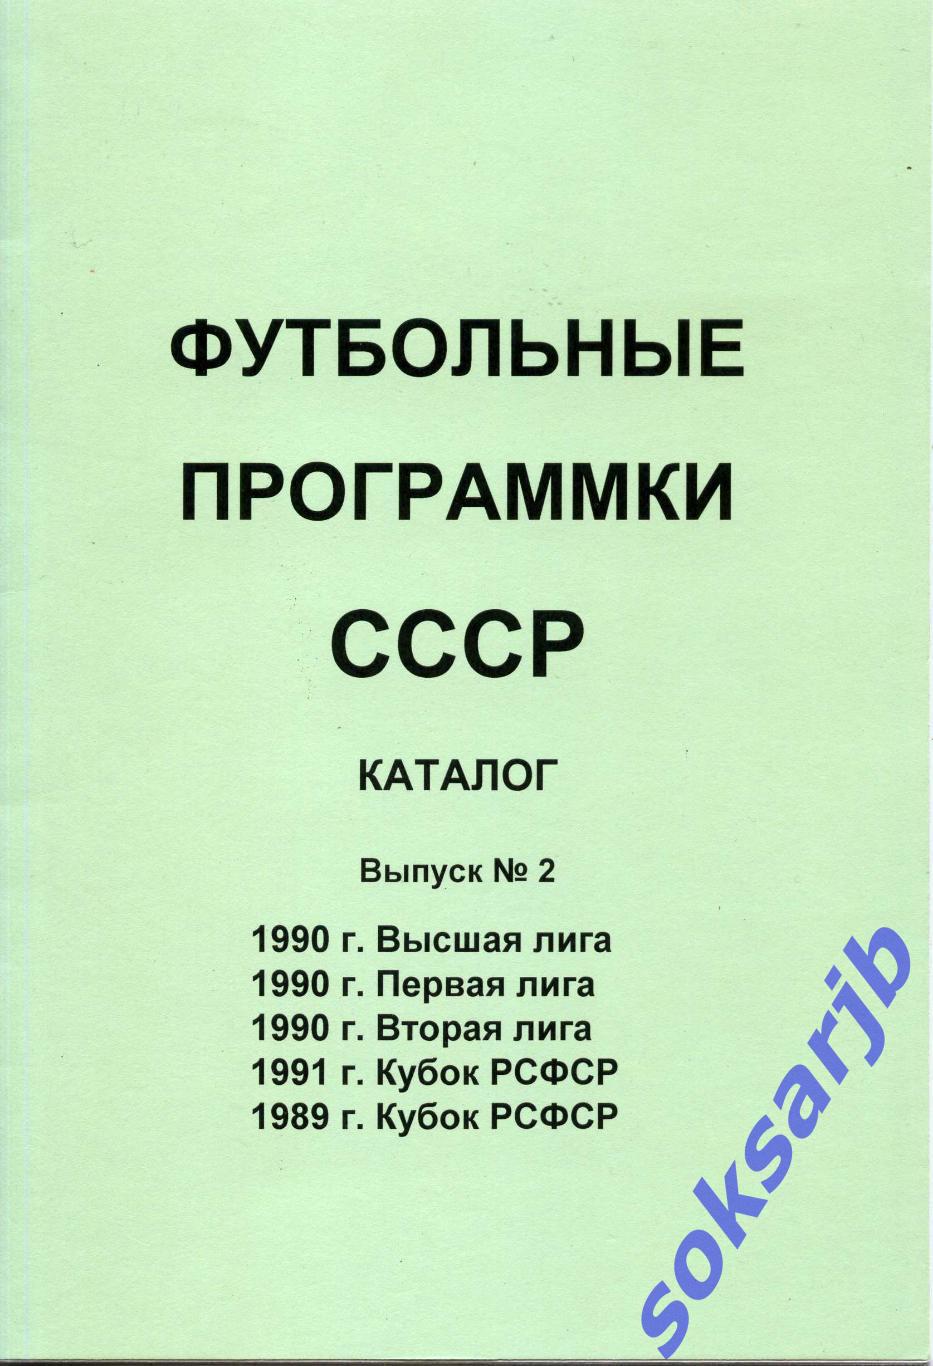 1989-1991. Каталог Футбольные программки СССР. Выпуск №2.